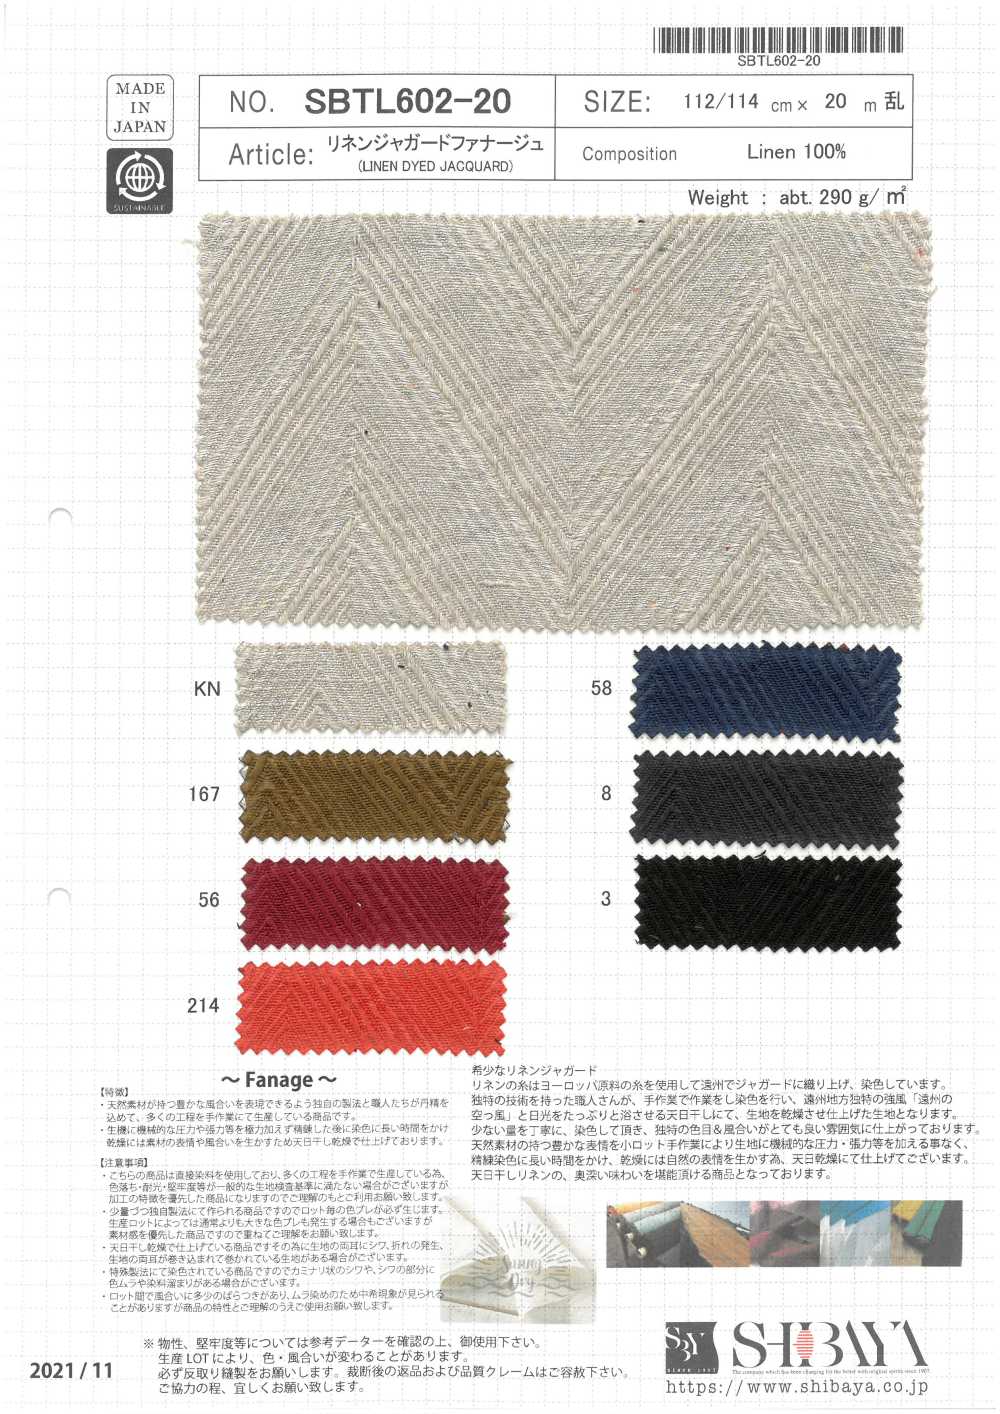 SBTL602-20 Fanage Lino Jacquard[Fabrica Textil] SHIBAYA